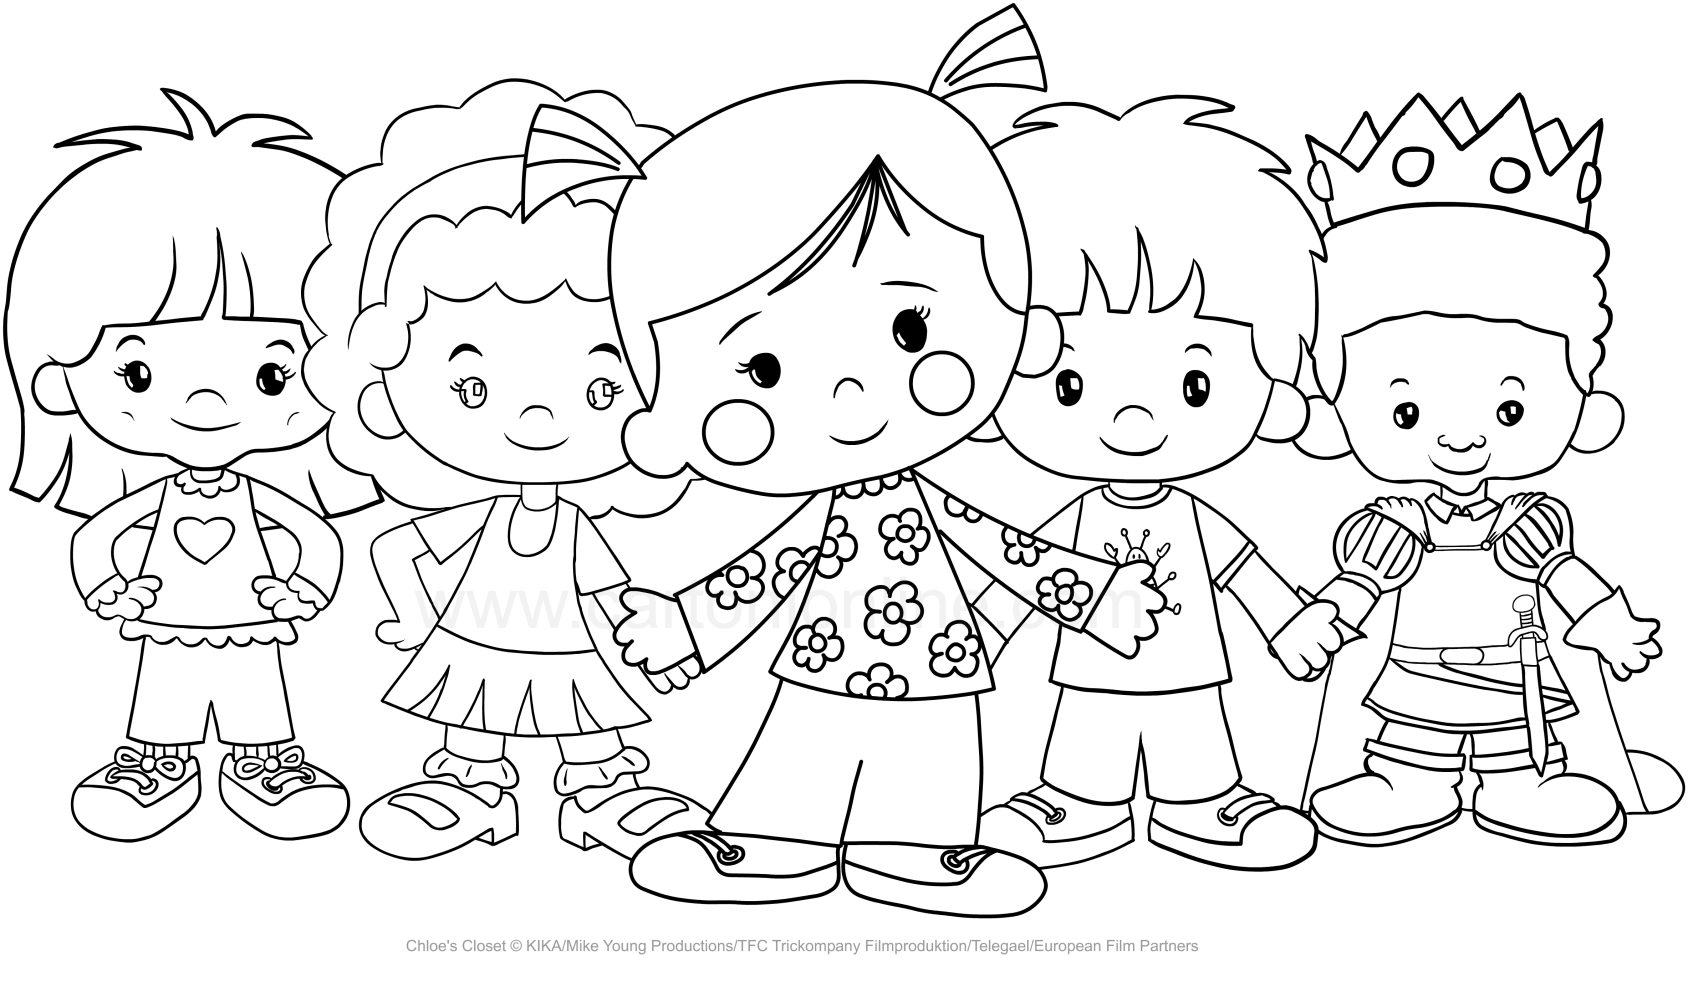 Dibujo de Chlo y sus amigas (La magia de Chloe) para imprimir y colorear